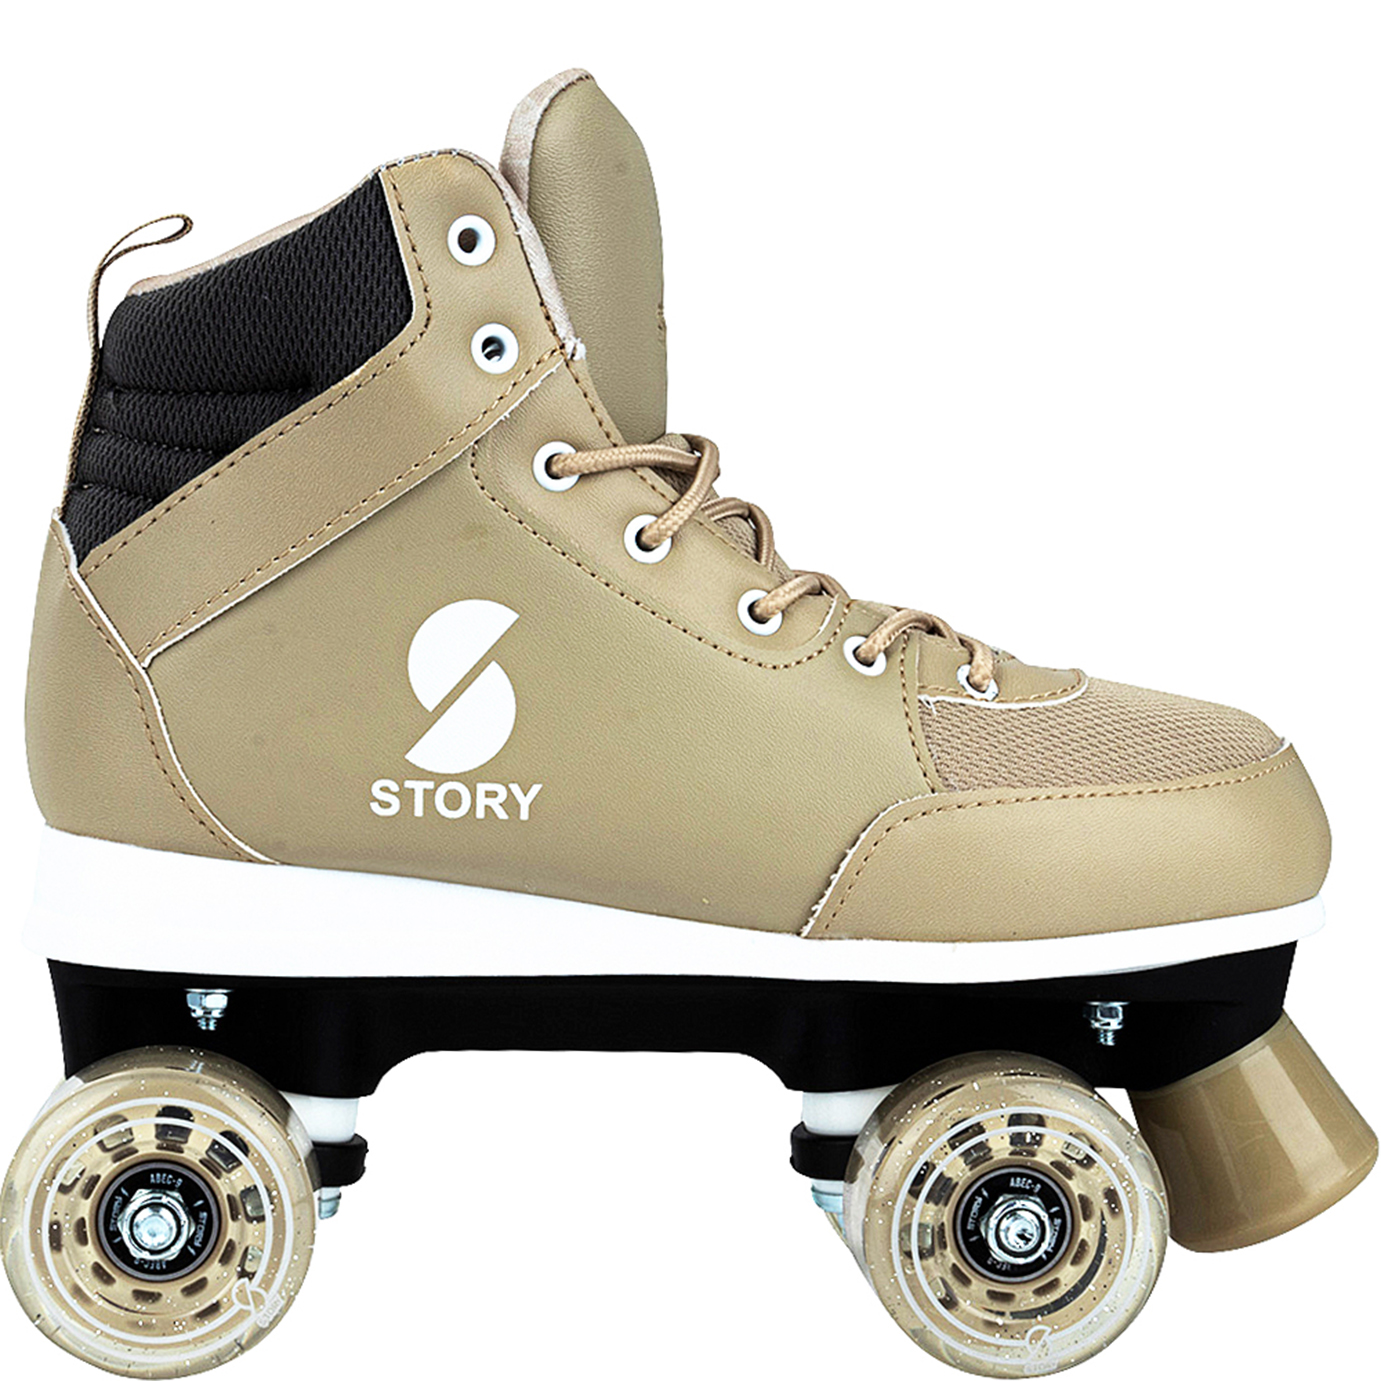 https://euroskateshop.be/story-duster-side-by-side-roller-skates.html?2=6115178